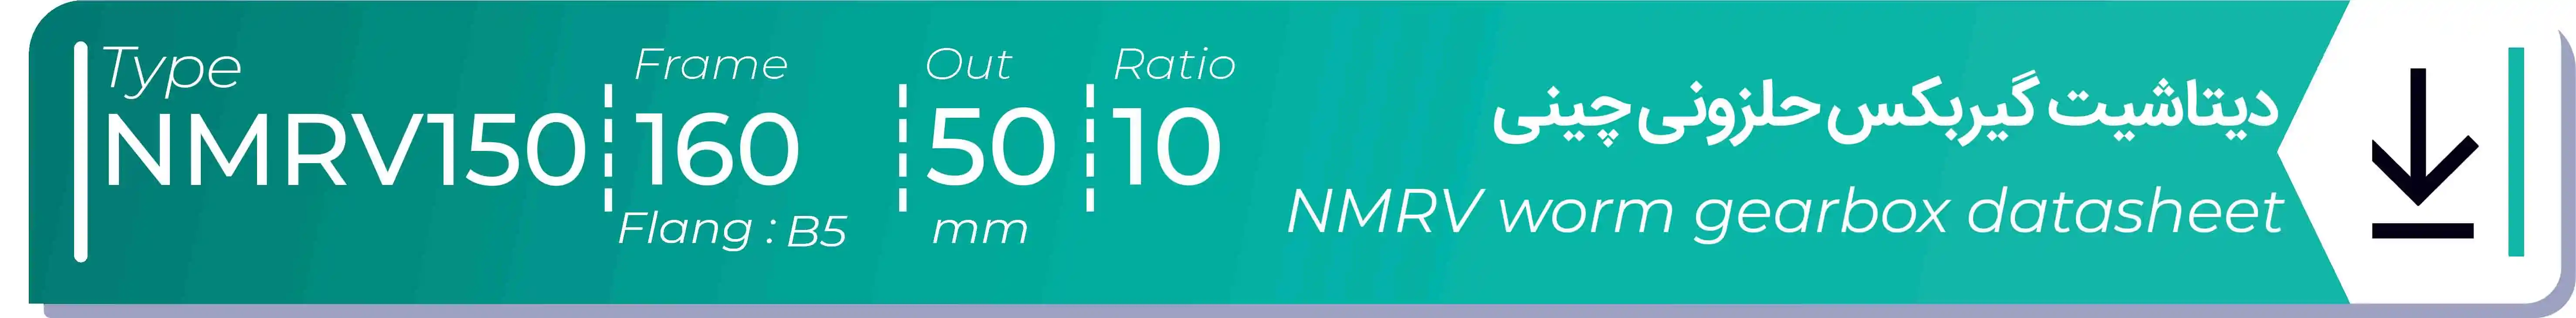  دیتاشیت و مشخصات فنی گیربکس حلزونی چینی   NMRV150  -  با خروجی 50- میلی متر و نسبت10 و فریم 160